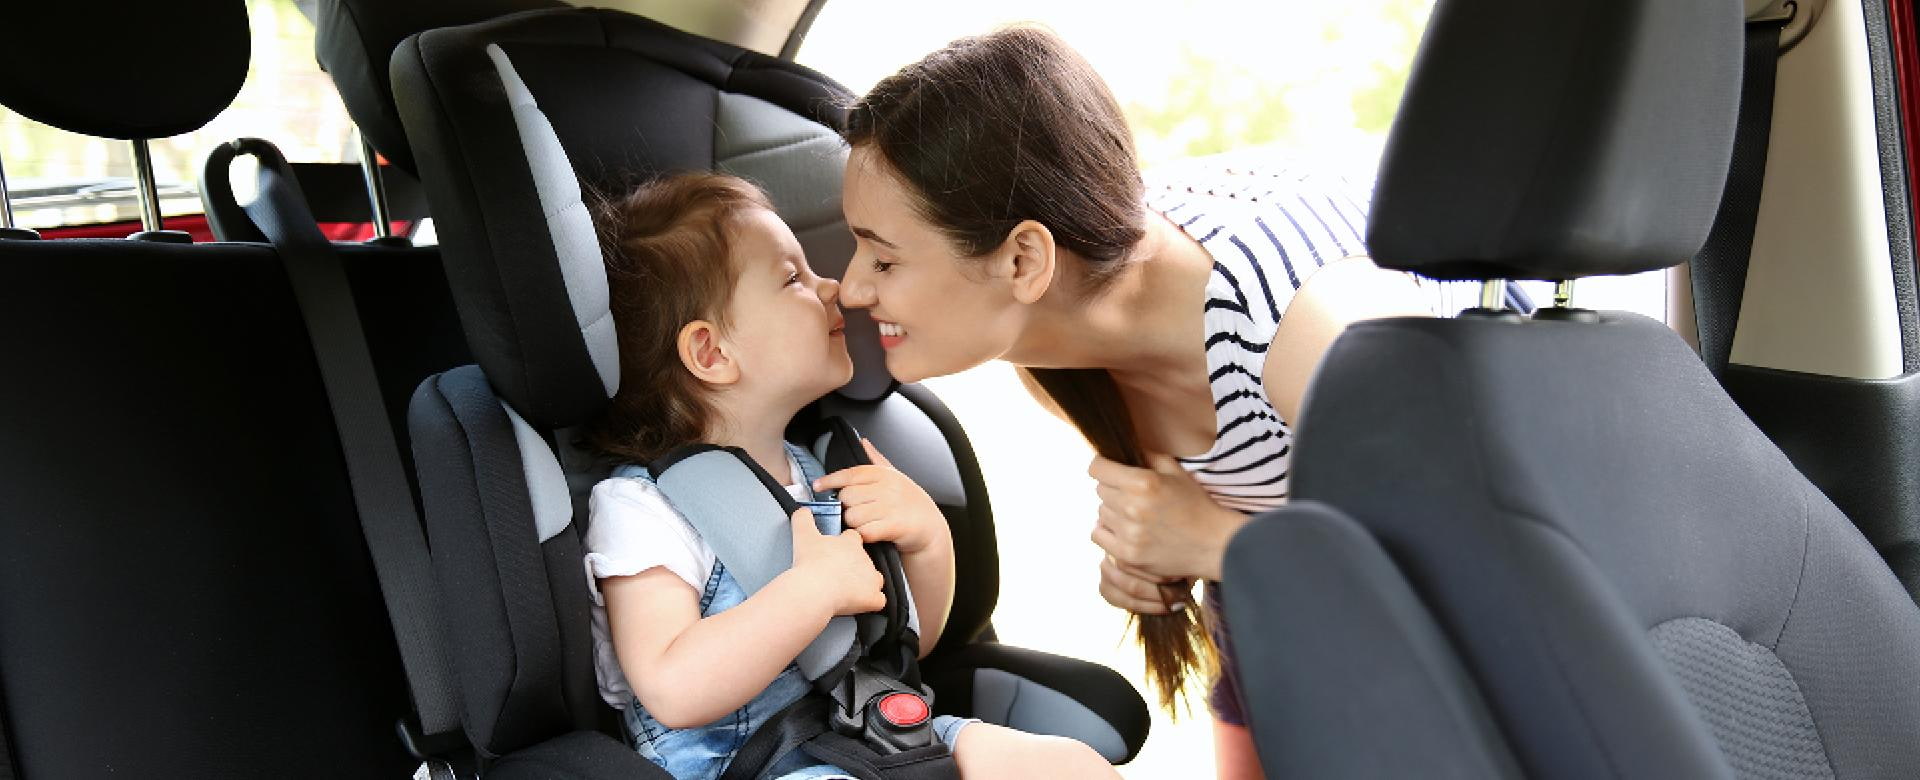 Mutter im Auto mit ihrer Tochter